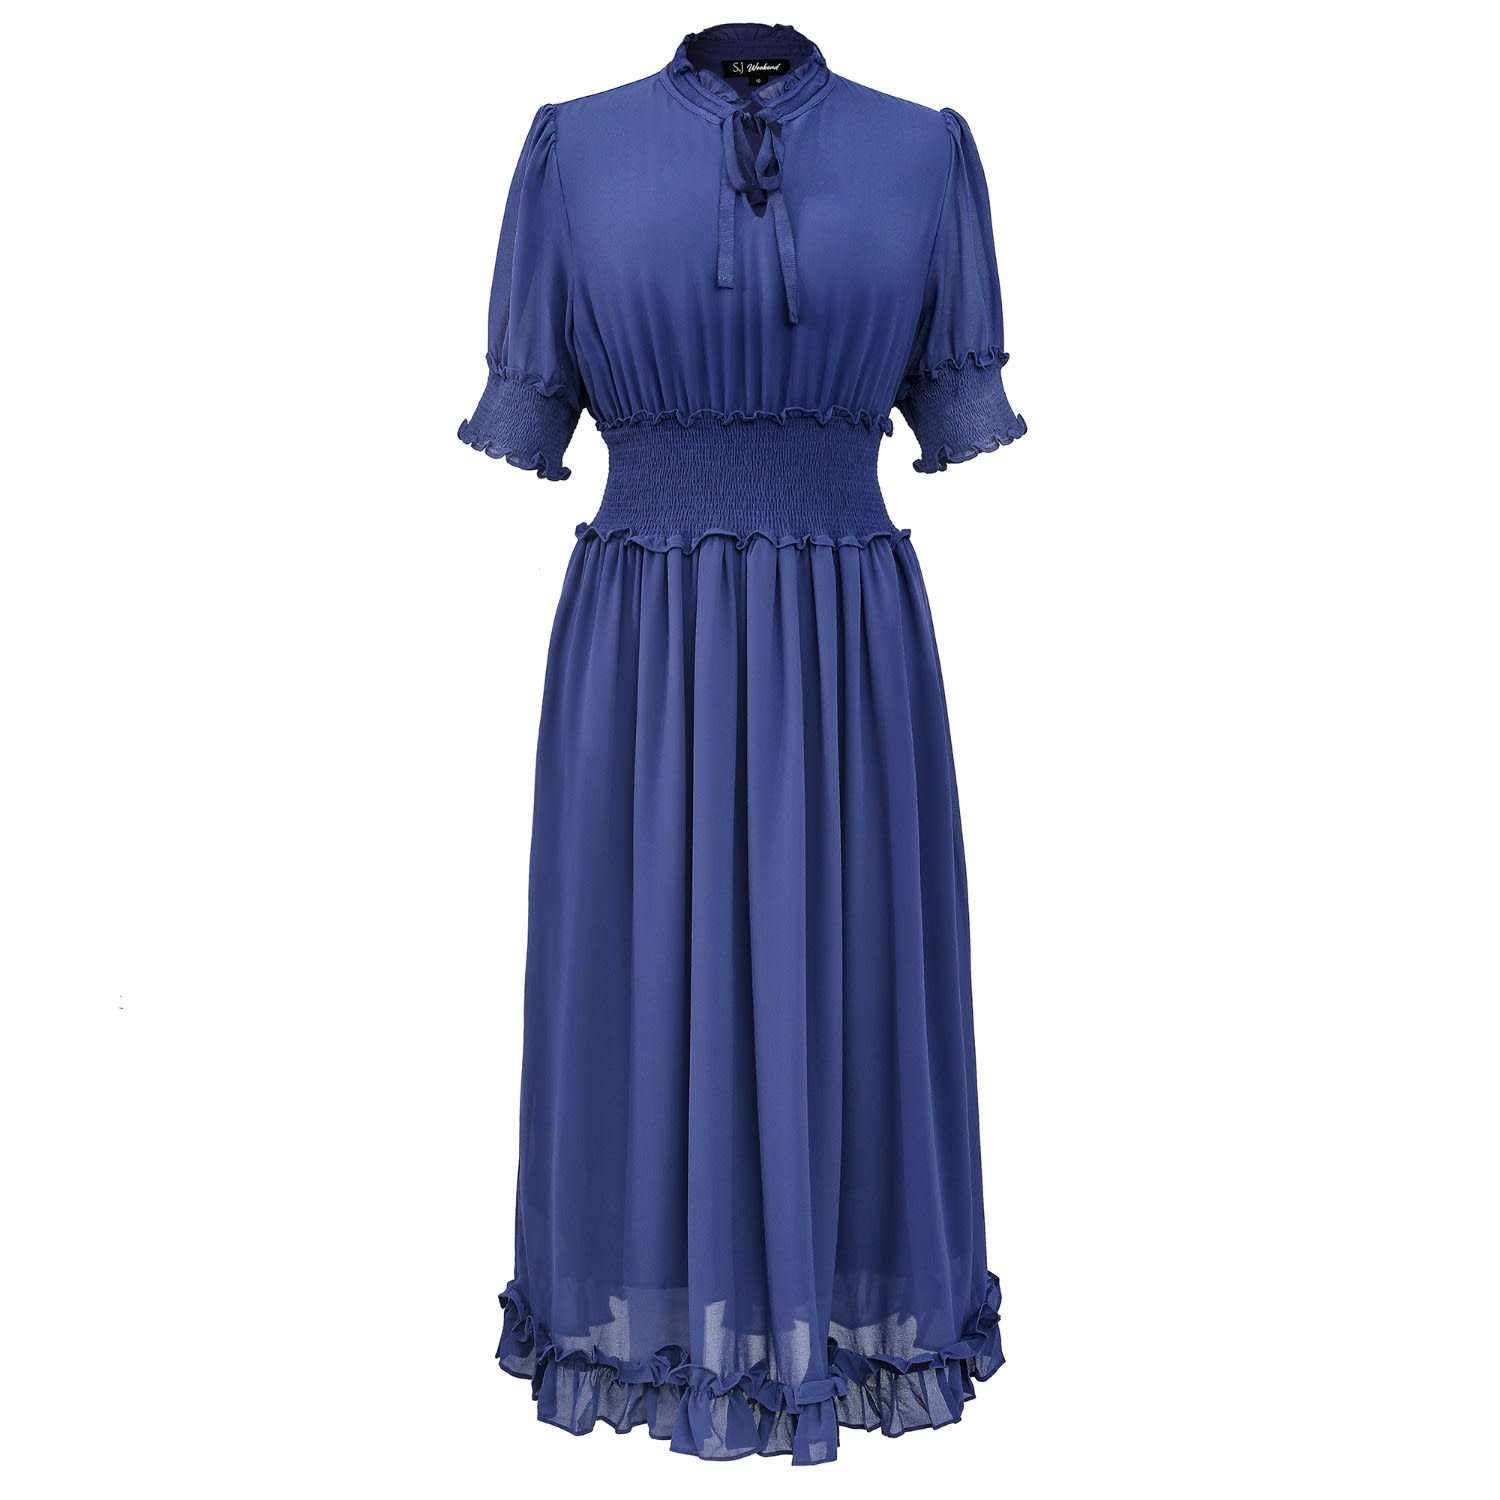 Women’s Chiffon Dress With Smocks And Small Ruffles - Purple-Blue Small Smart and Joy